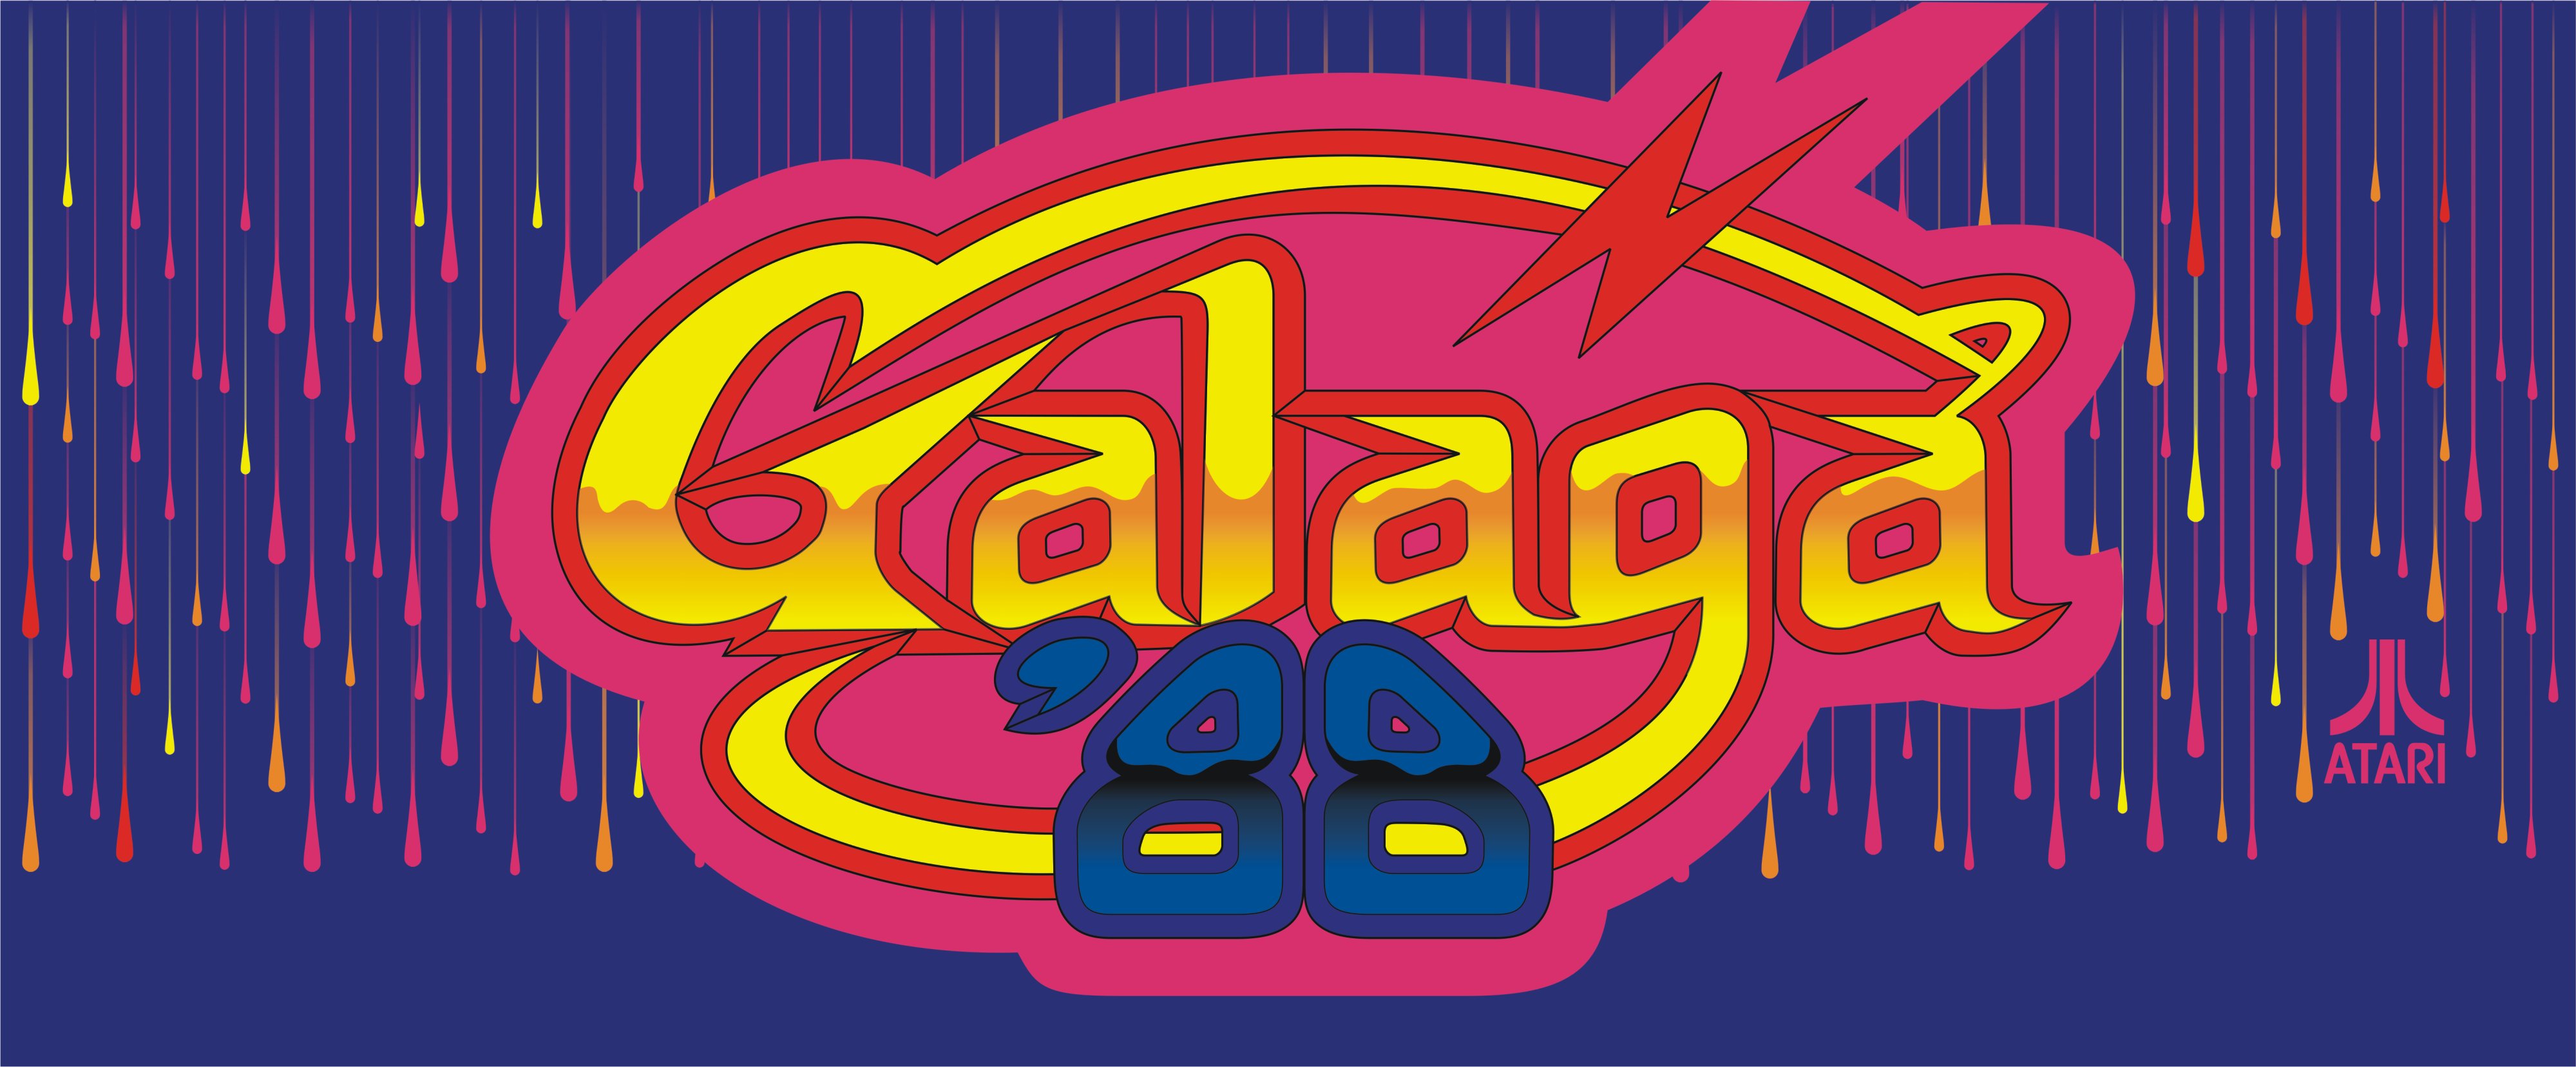 galaga, Sci fi, Arcade, Shooter, Spaceship, Action, Atari Wallpaper